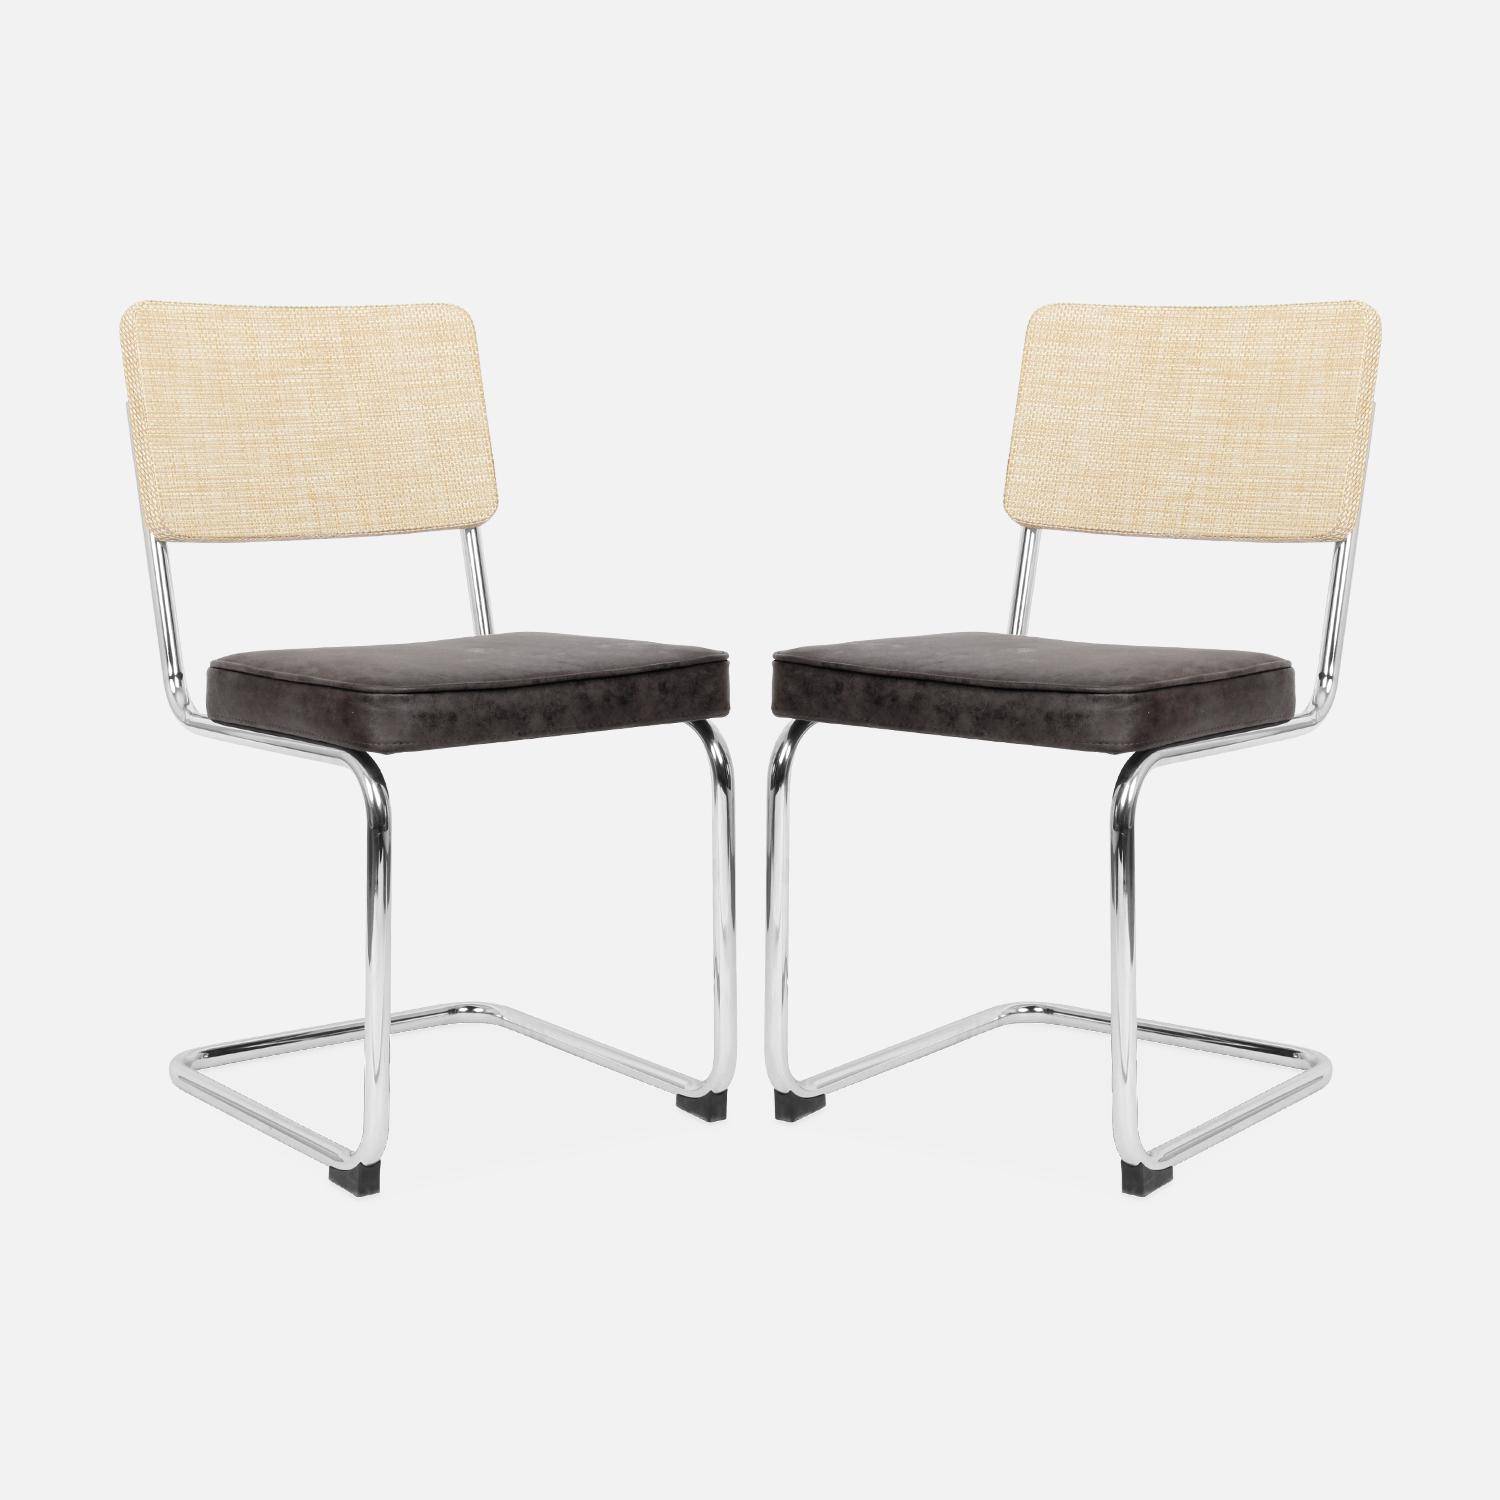 2 cadeiras cantilever - Maja - tecido preto e resina com efeito rattan, 46 x 54,5 x 84,5cm Photo5